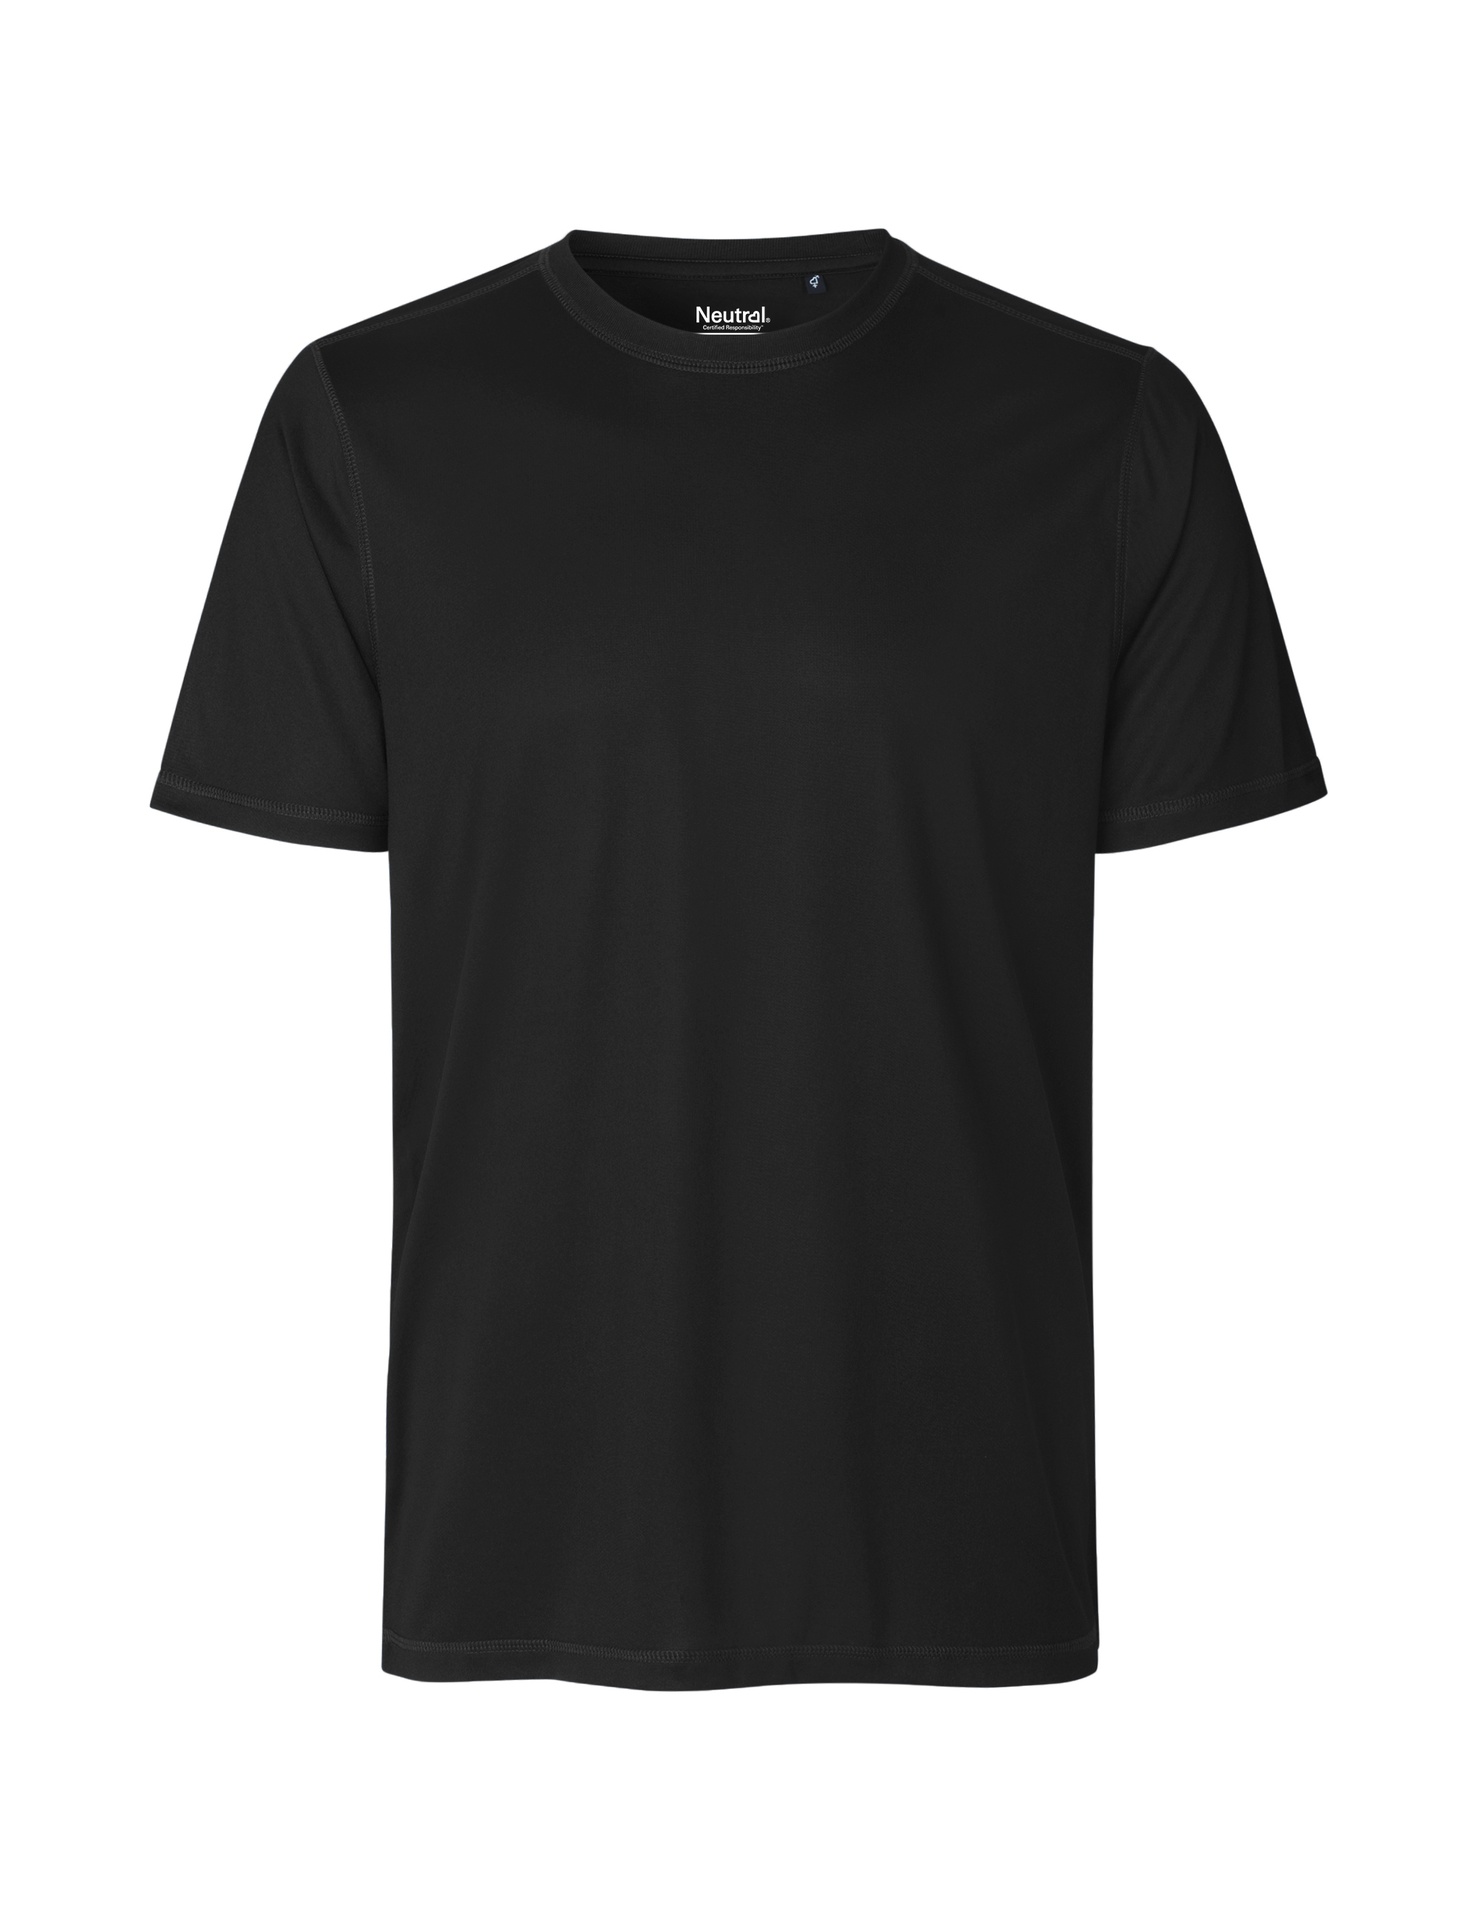 [PR/03756] Recycled Performance T-Shirt (Black 03, L)